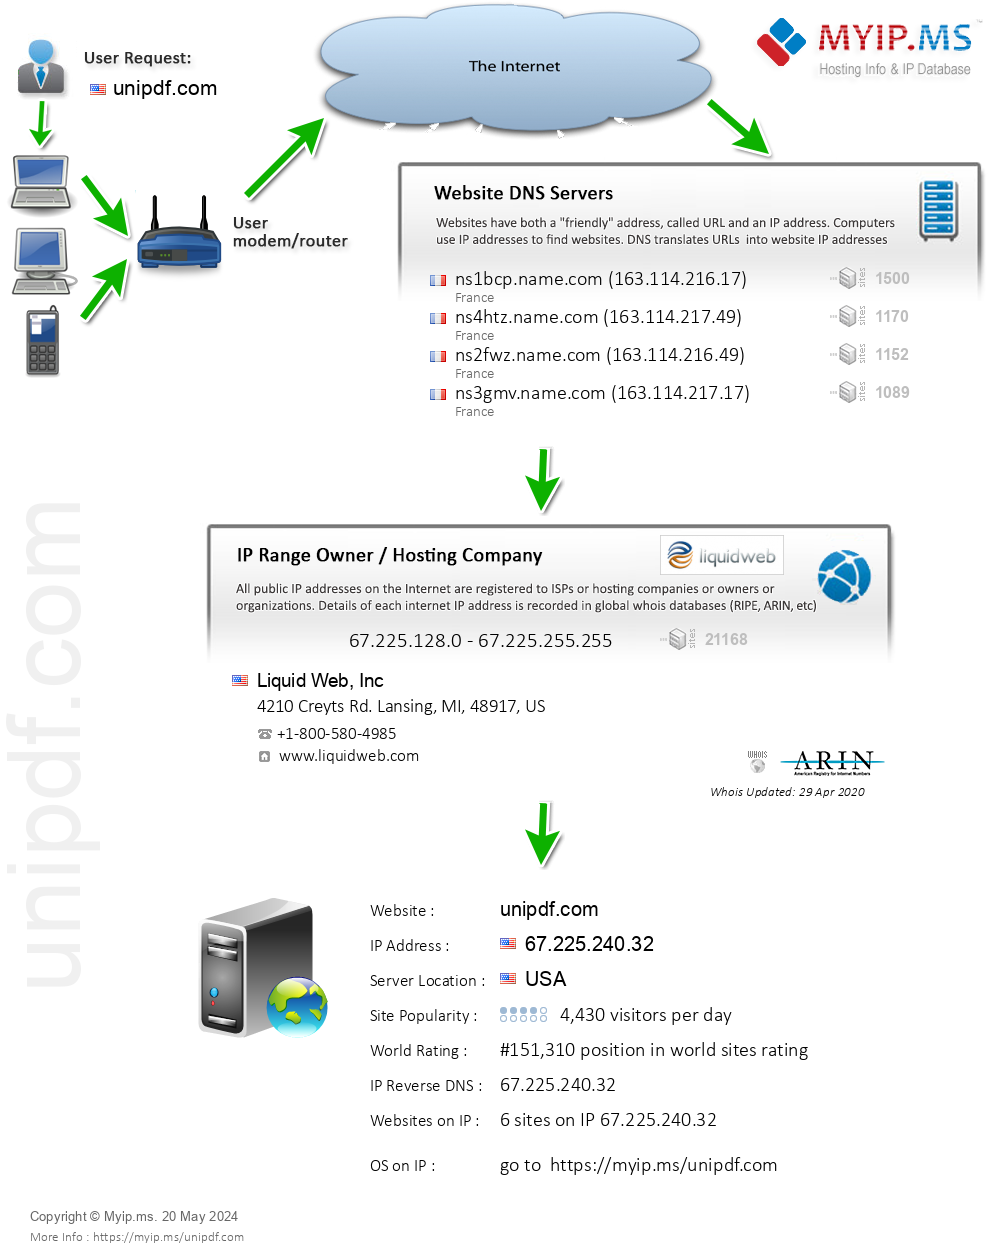 Unipdf.com - Website Hosting Visual IP Diagram